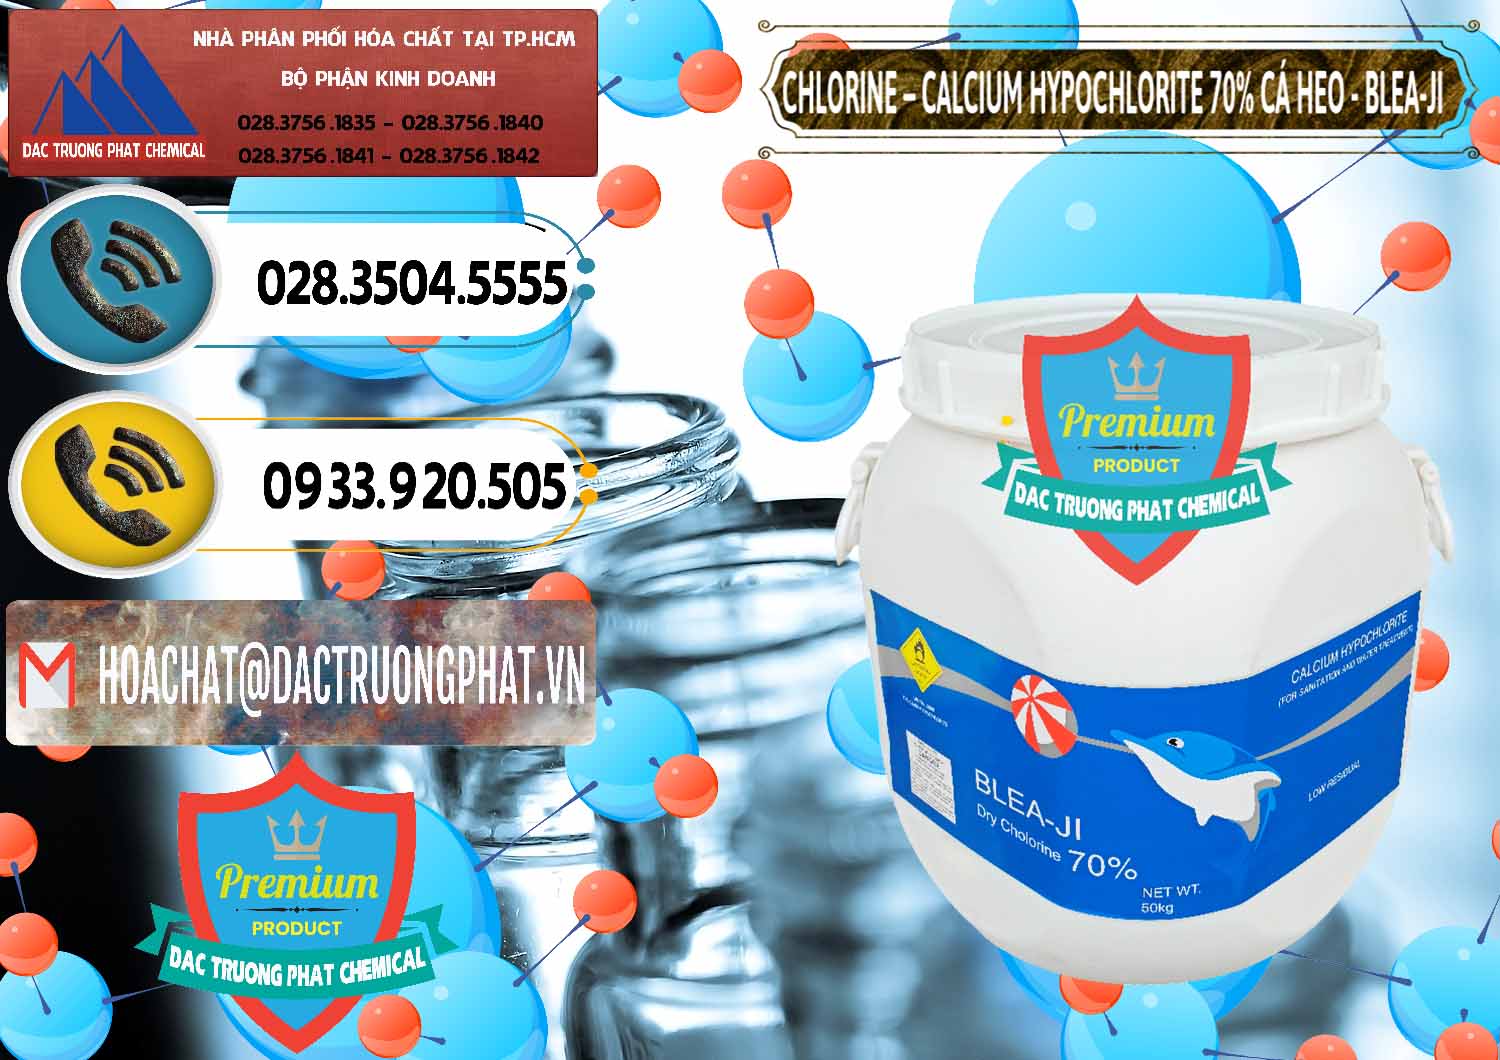 Chuyên cung ứng _ bán Clorin - Chlorine Cá Heo 70% Blea-Ji Trung Quốc China - 0056 - Nhập khẩu - phân phối hóa chất tại TP.HCM - hoachatdetnhuom.vn